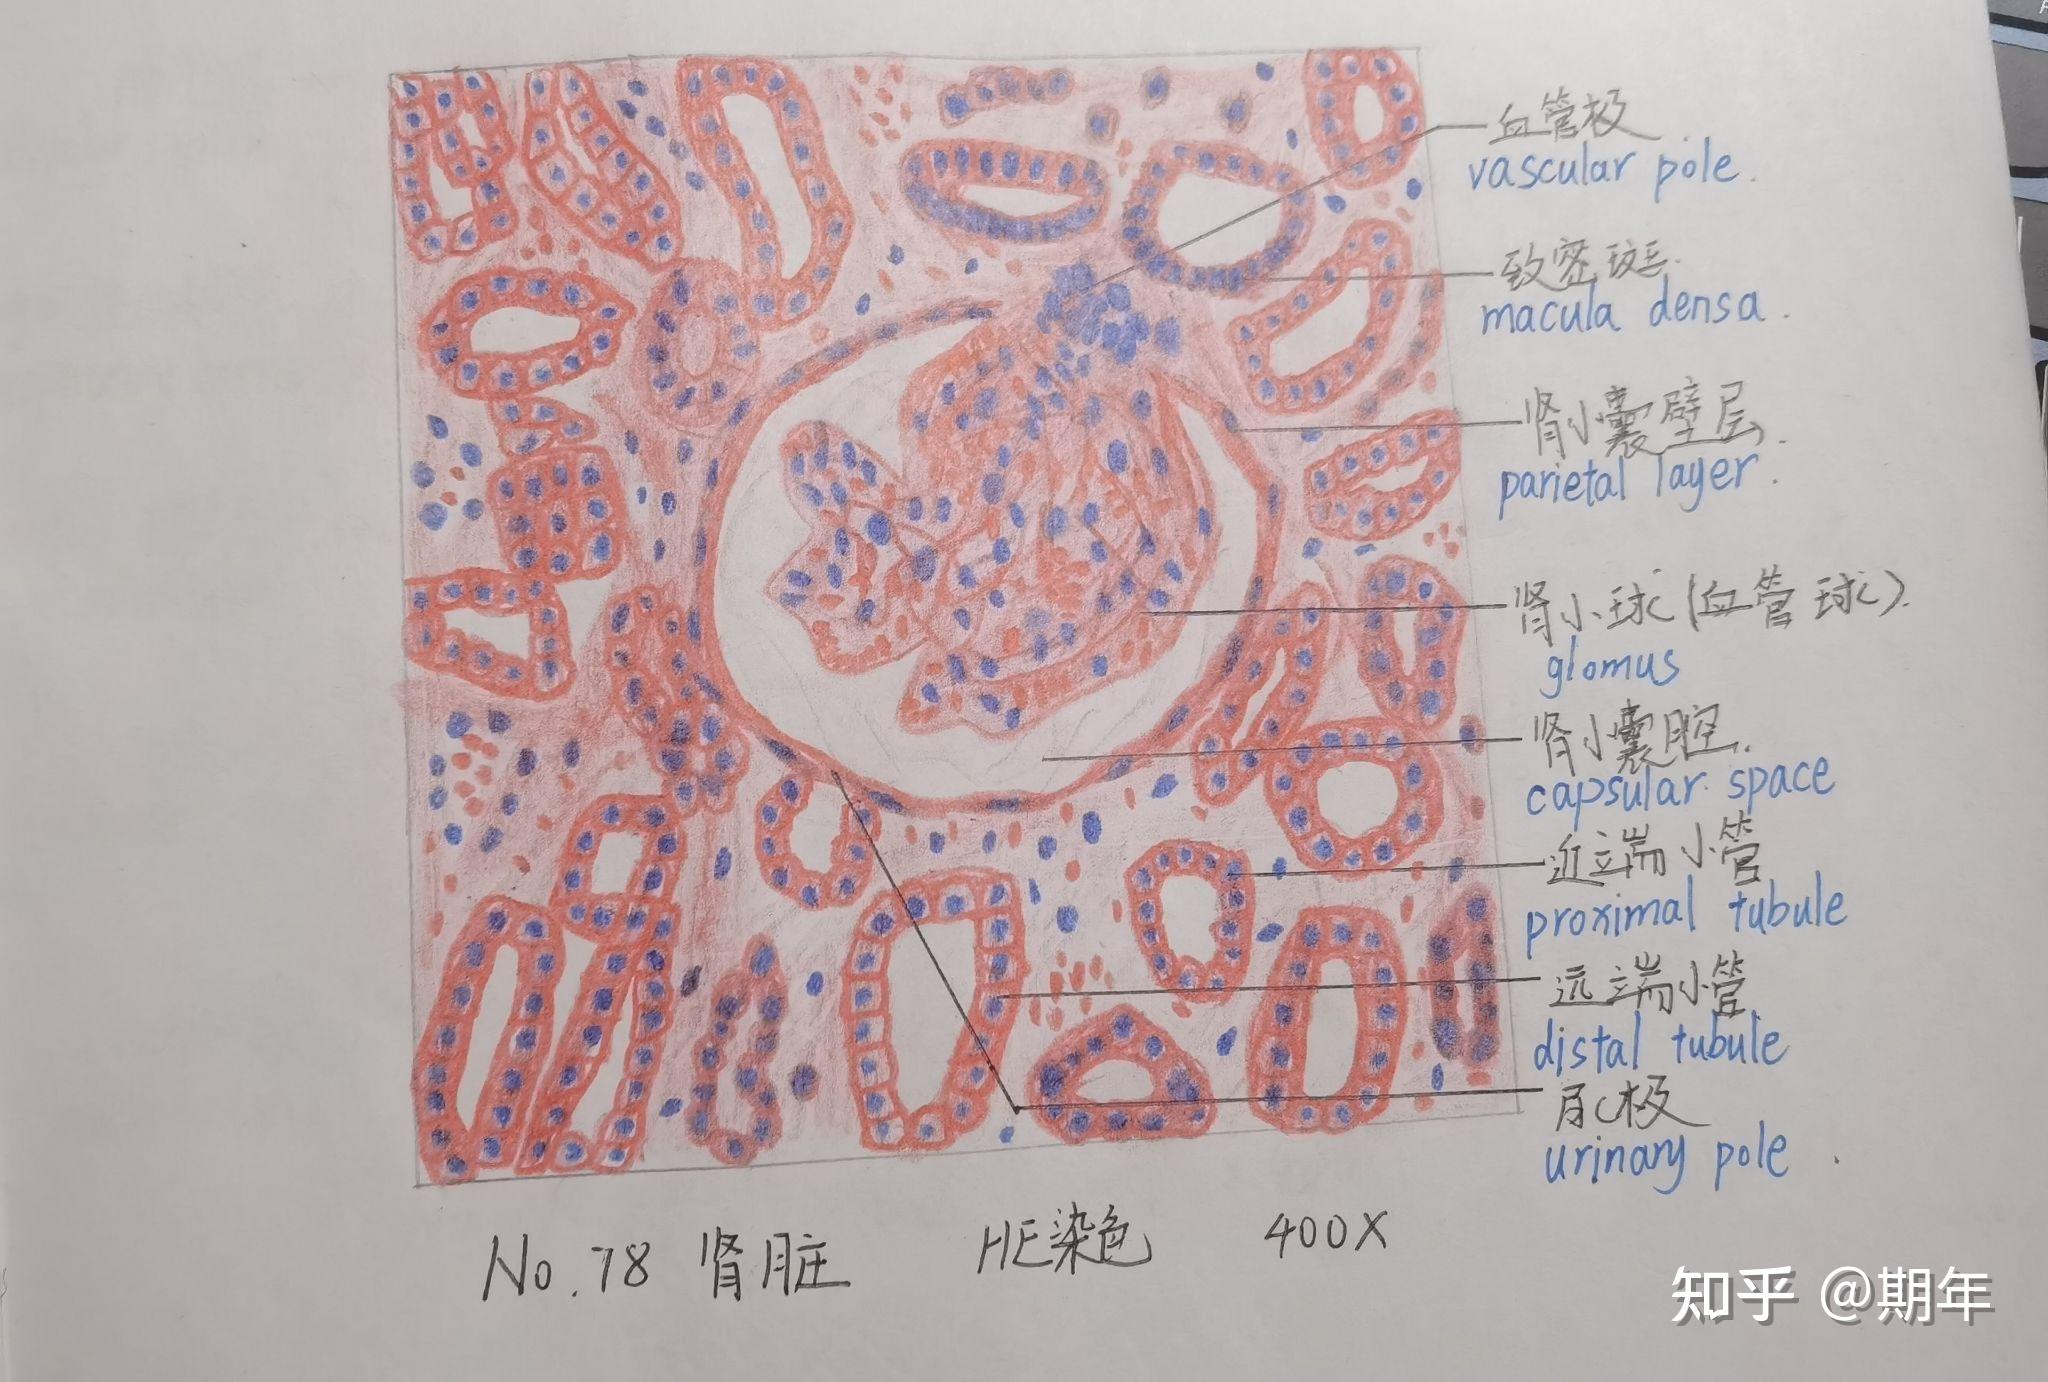 肾组胚红蓝铅笔绘图图片